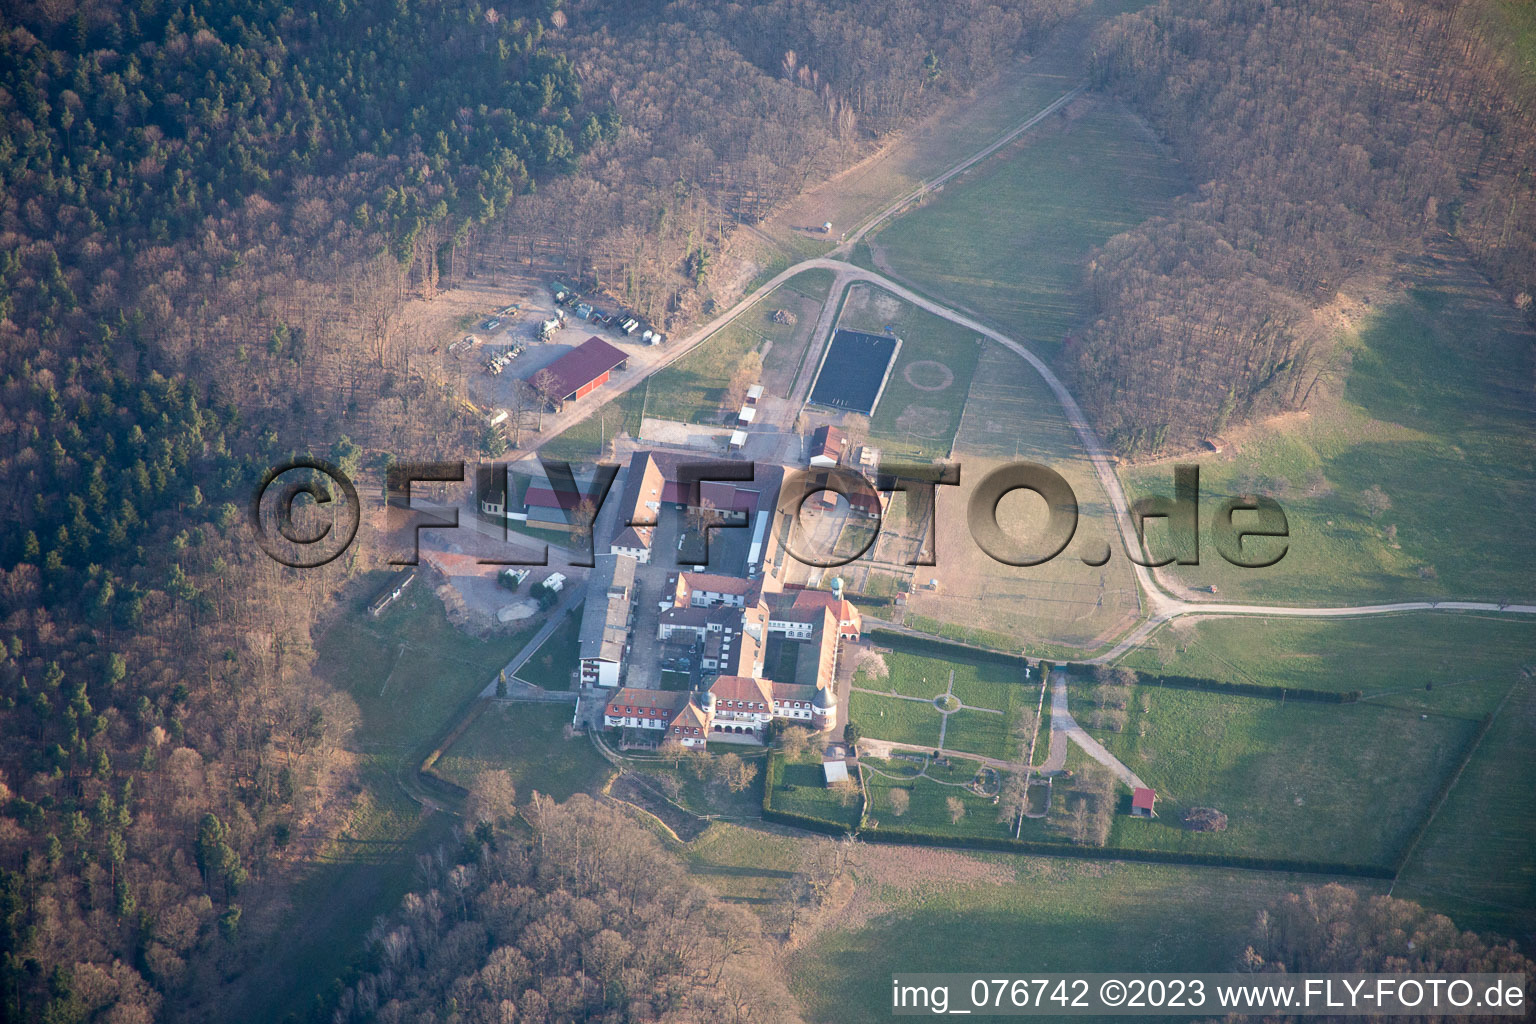 Bad Bergzabern dans le département Rhénanie-Palatinat, Allemagne vue du ciel